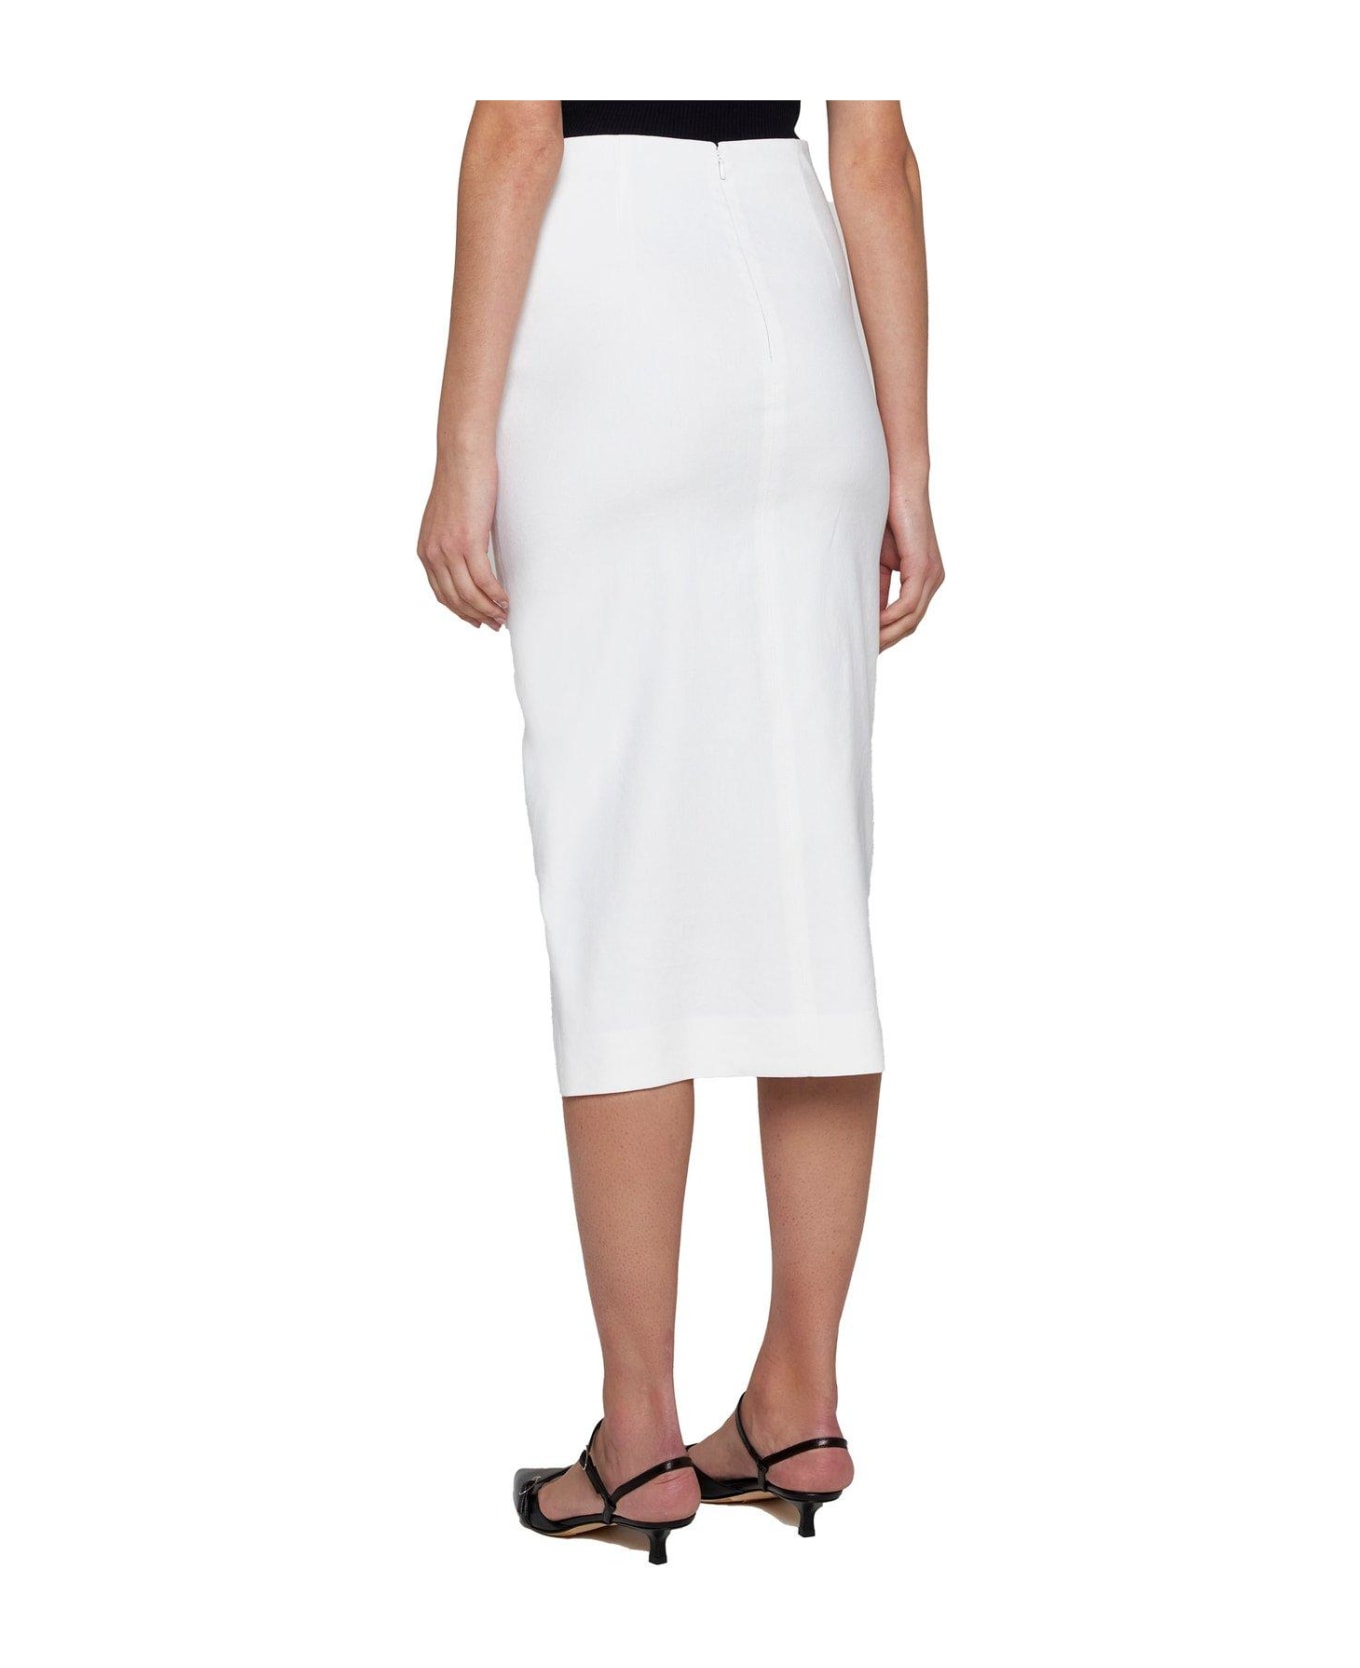 Isabel Marant Skirt - White スカート